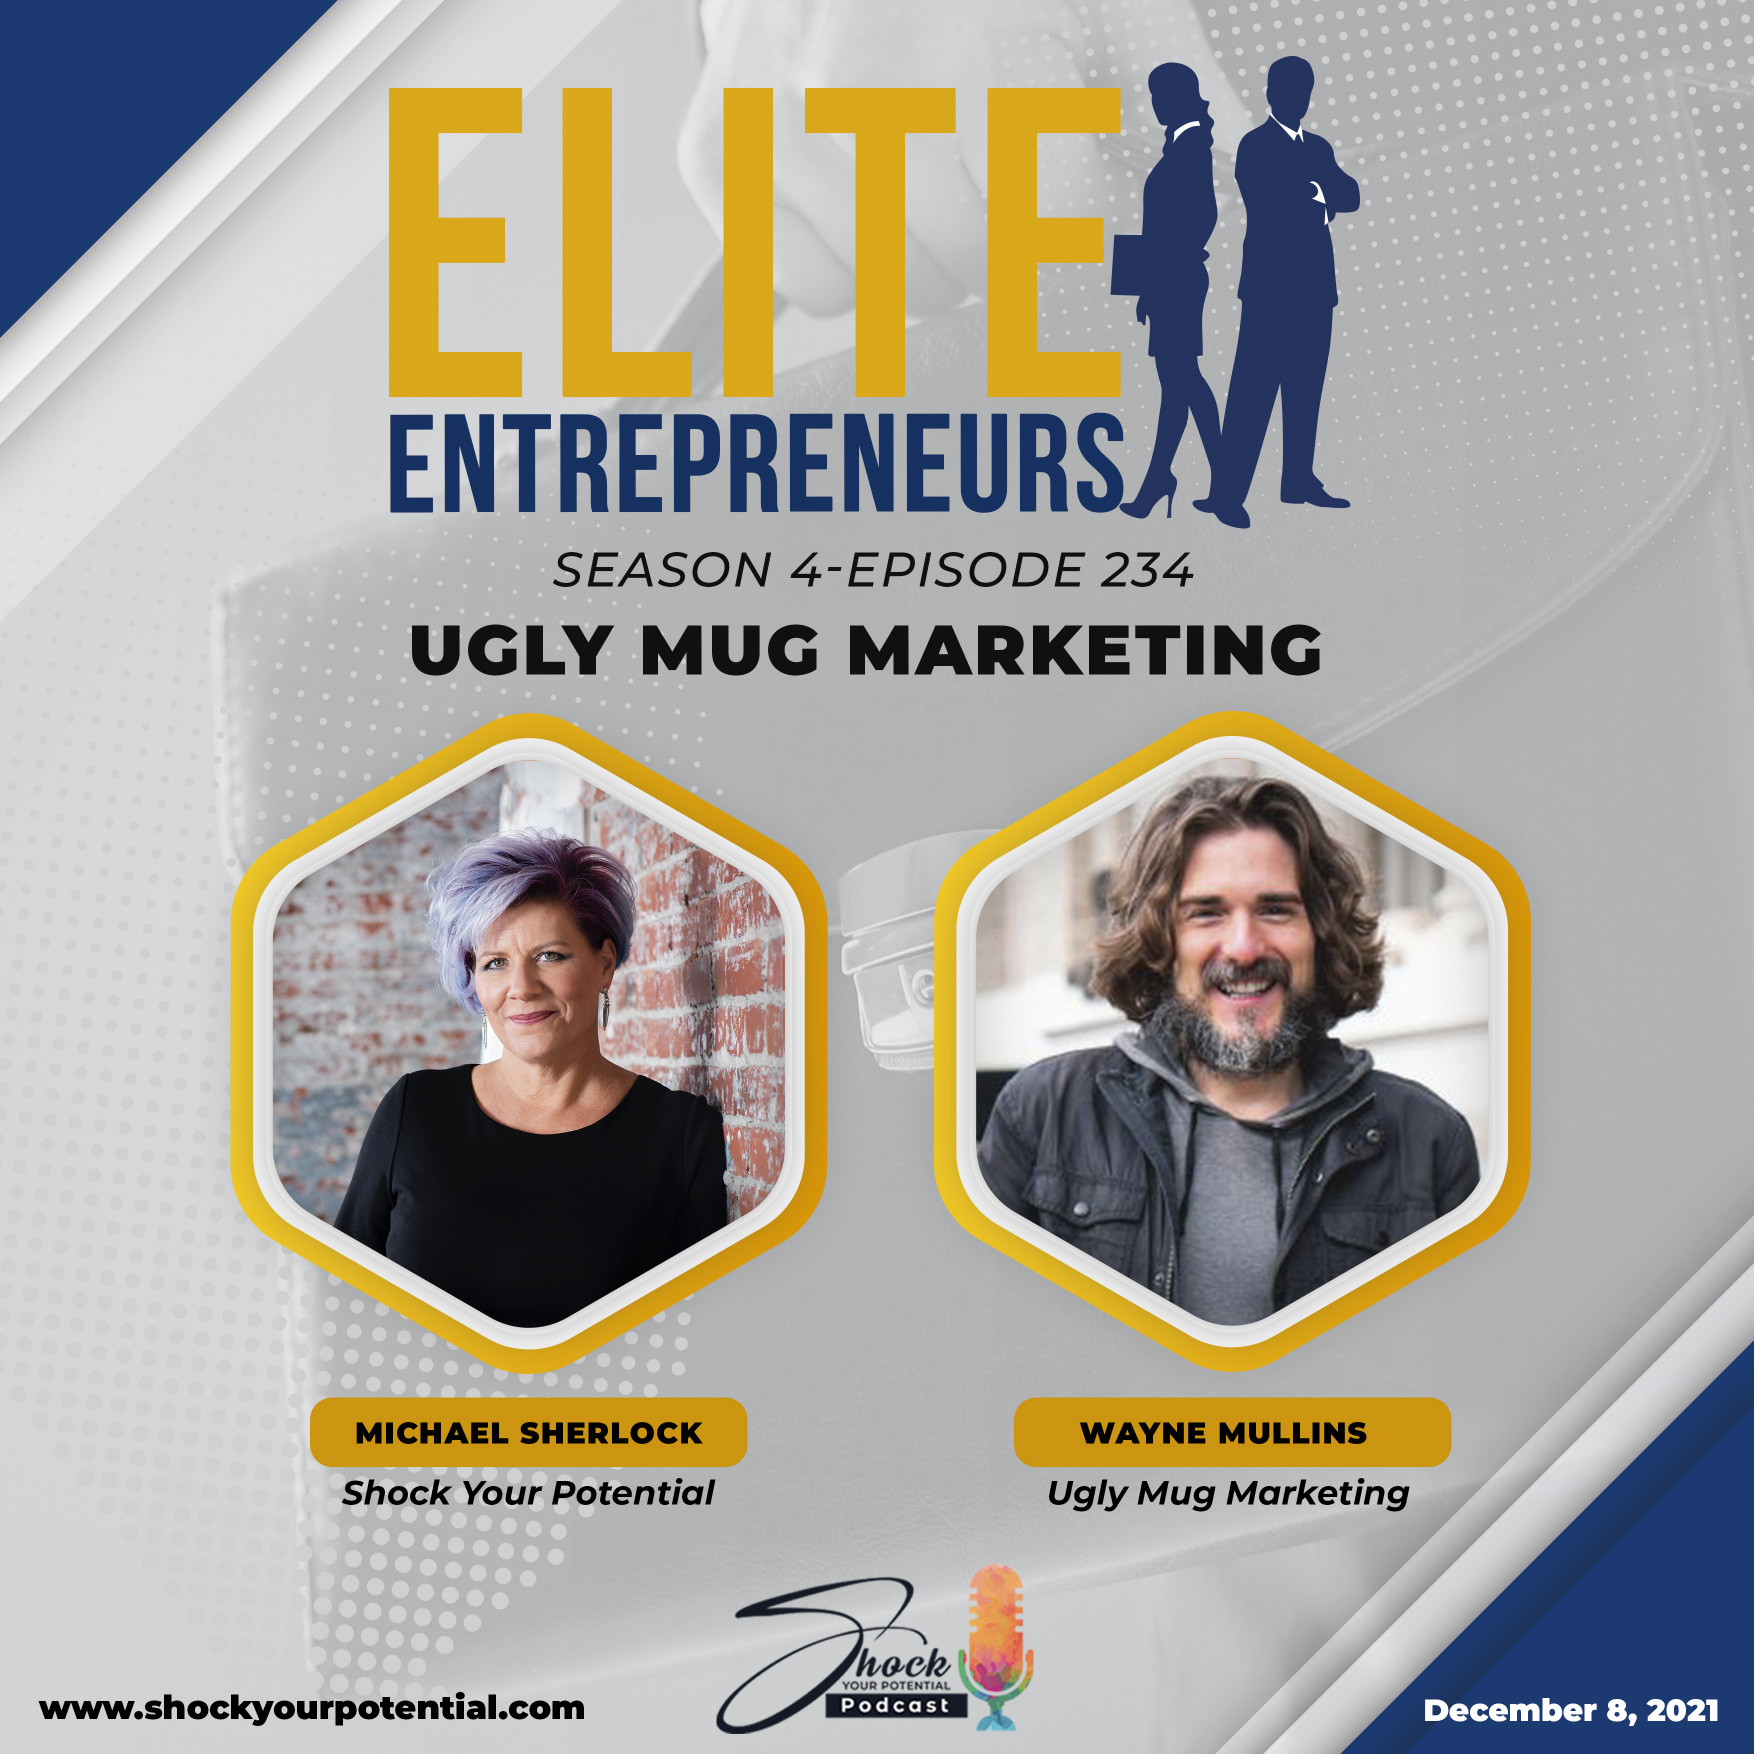 Ugly Mug Marketing – Wayne Mullins